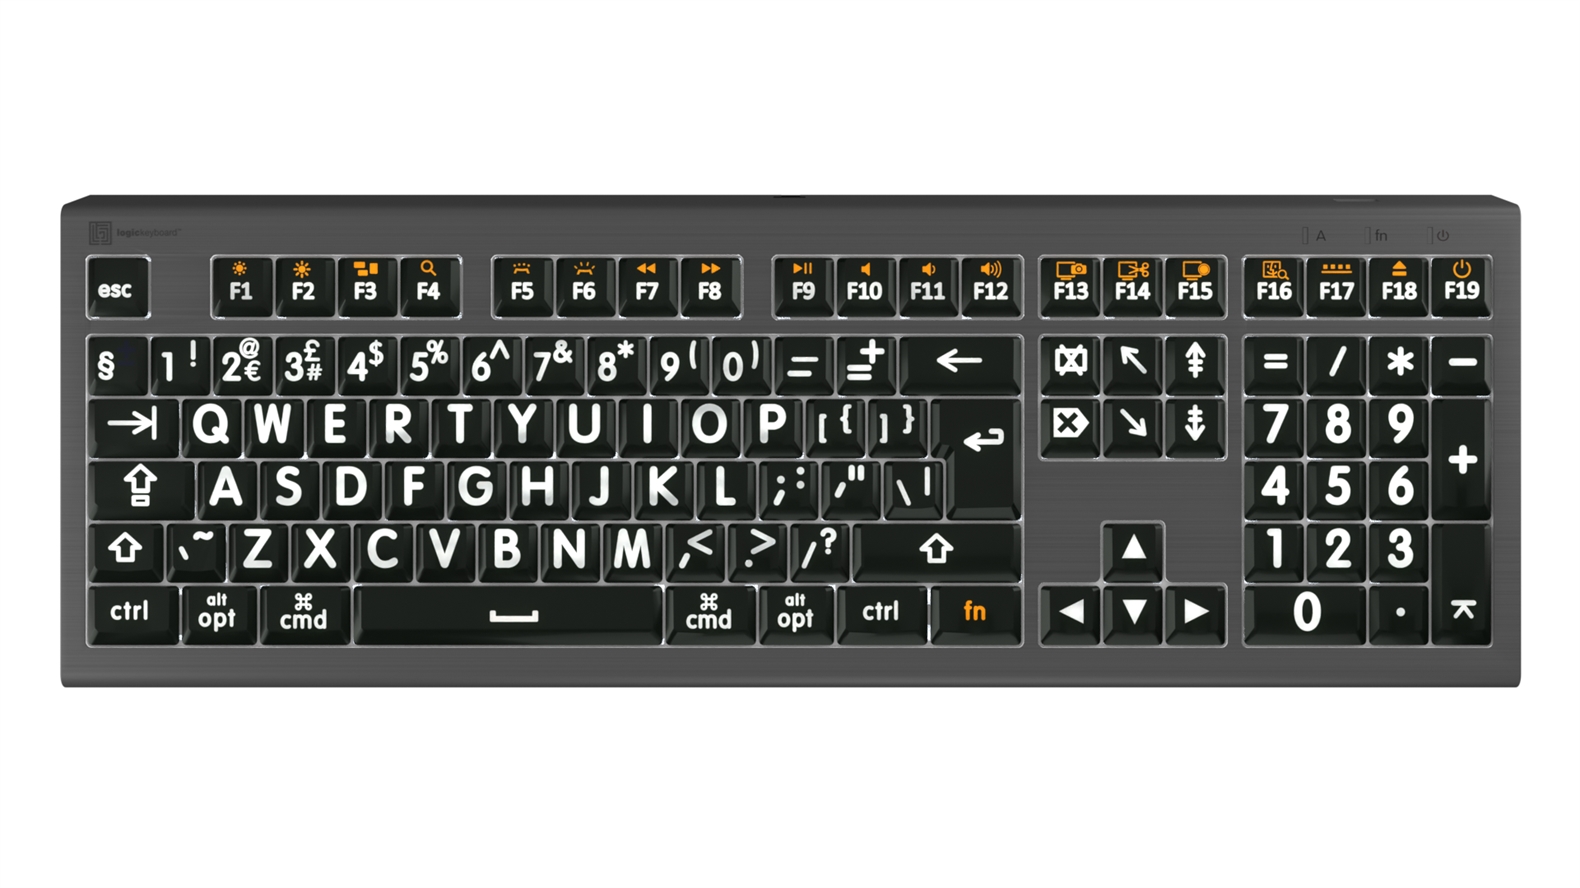  Large Print - White on Black<br>ASTRA2 Backlit Keyboard – Mac<br>